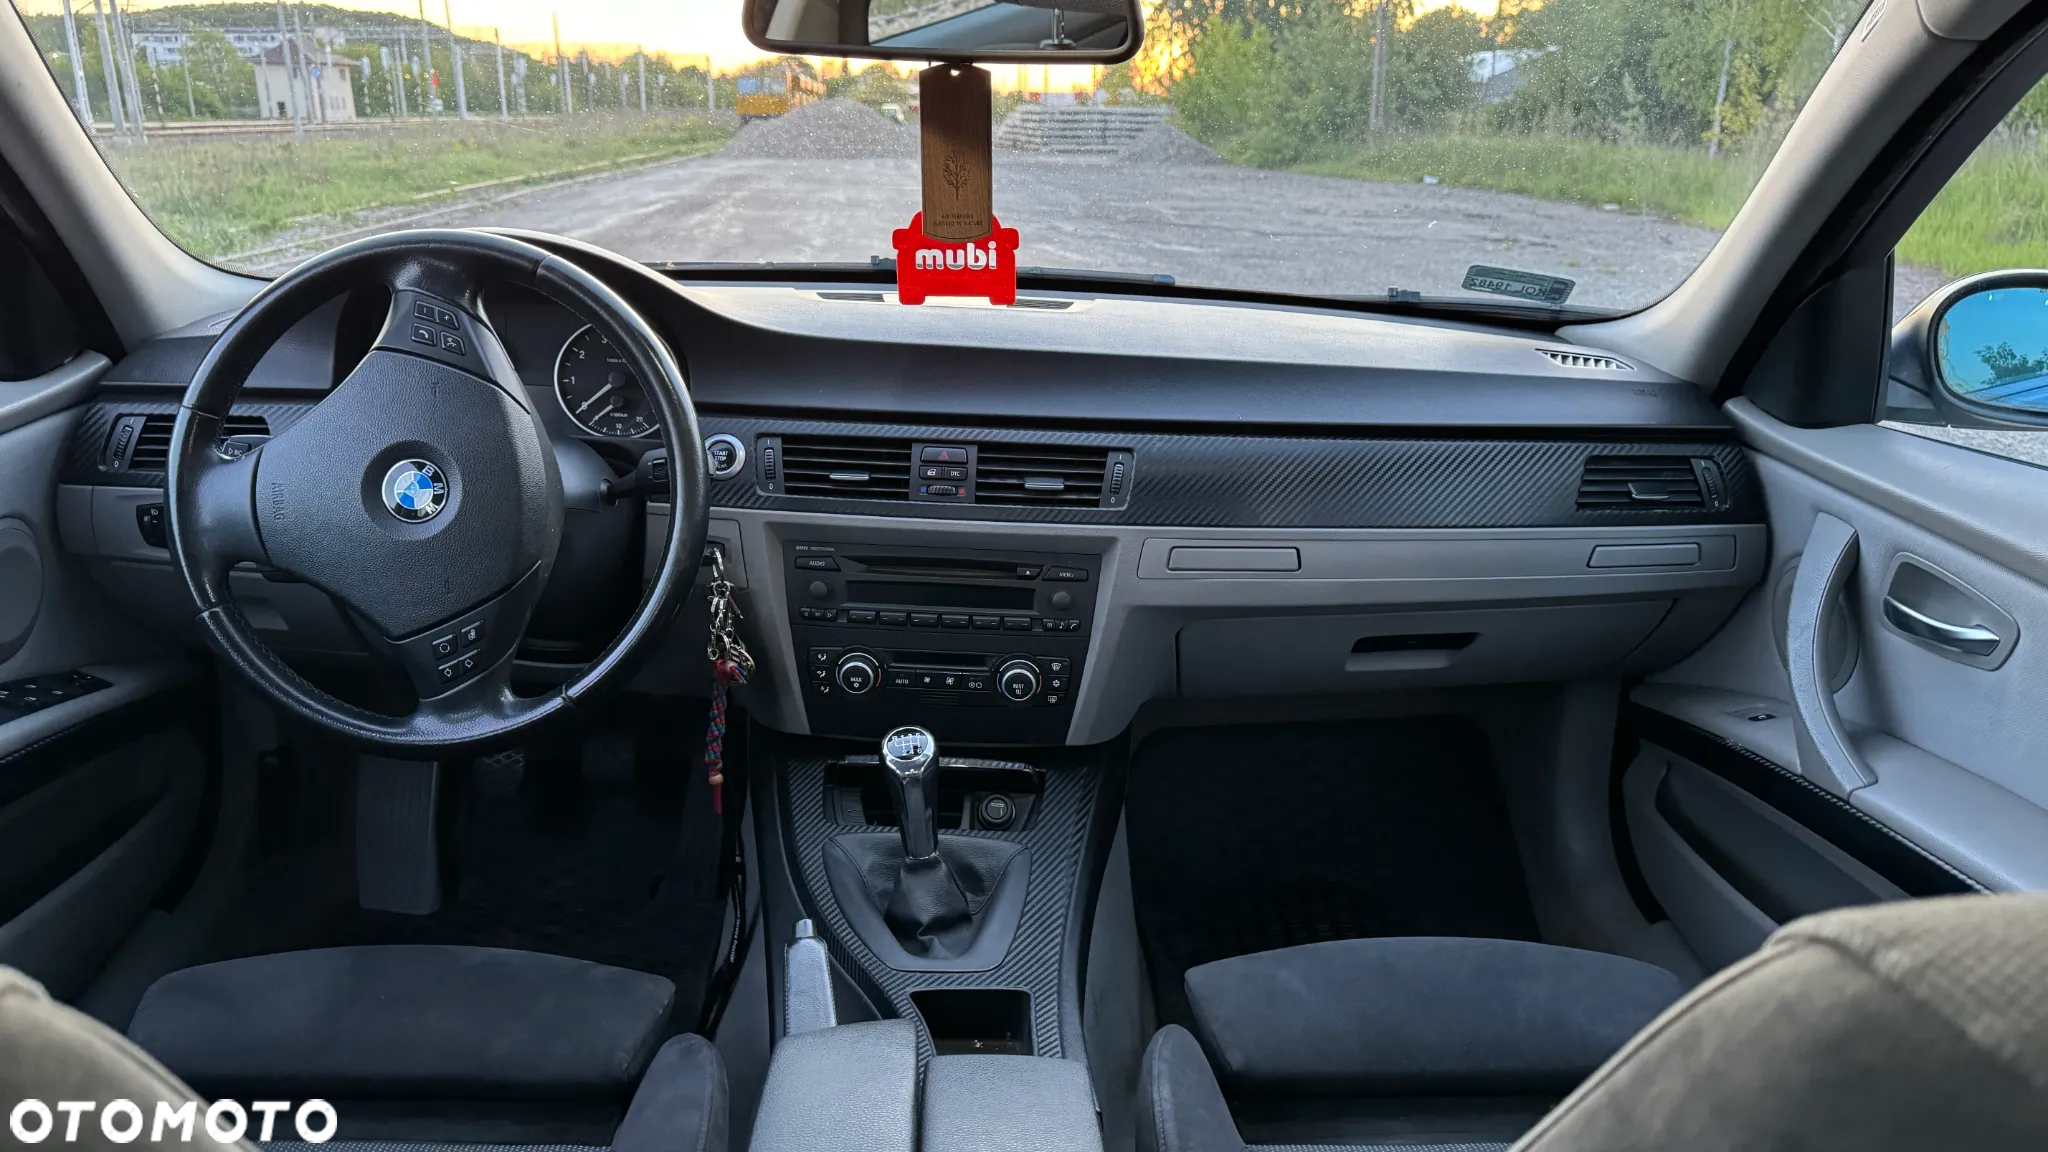 BMW Seria 3 318i - 33